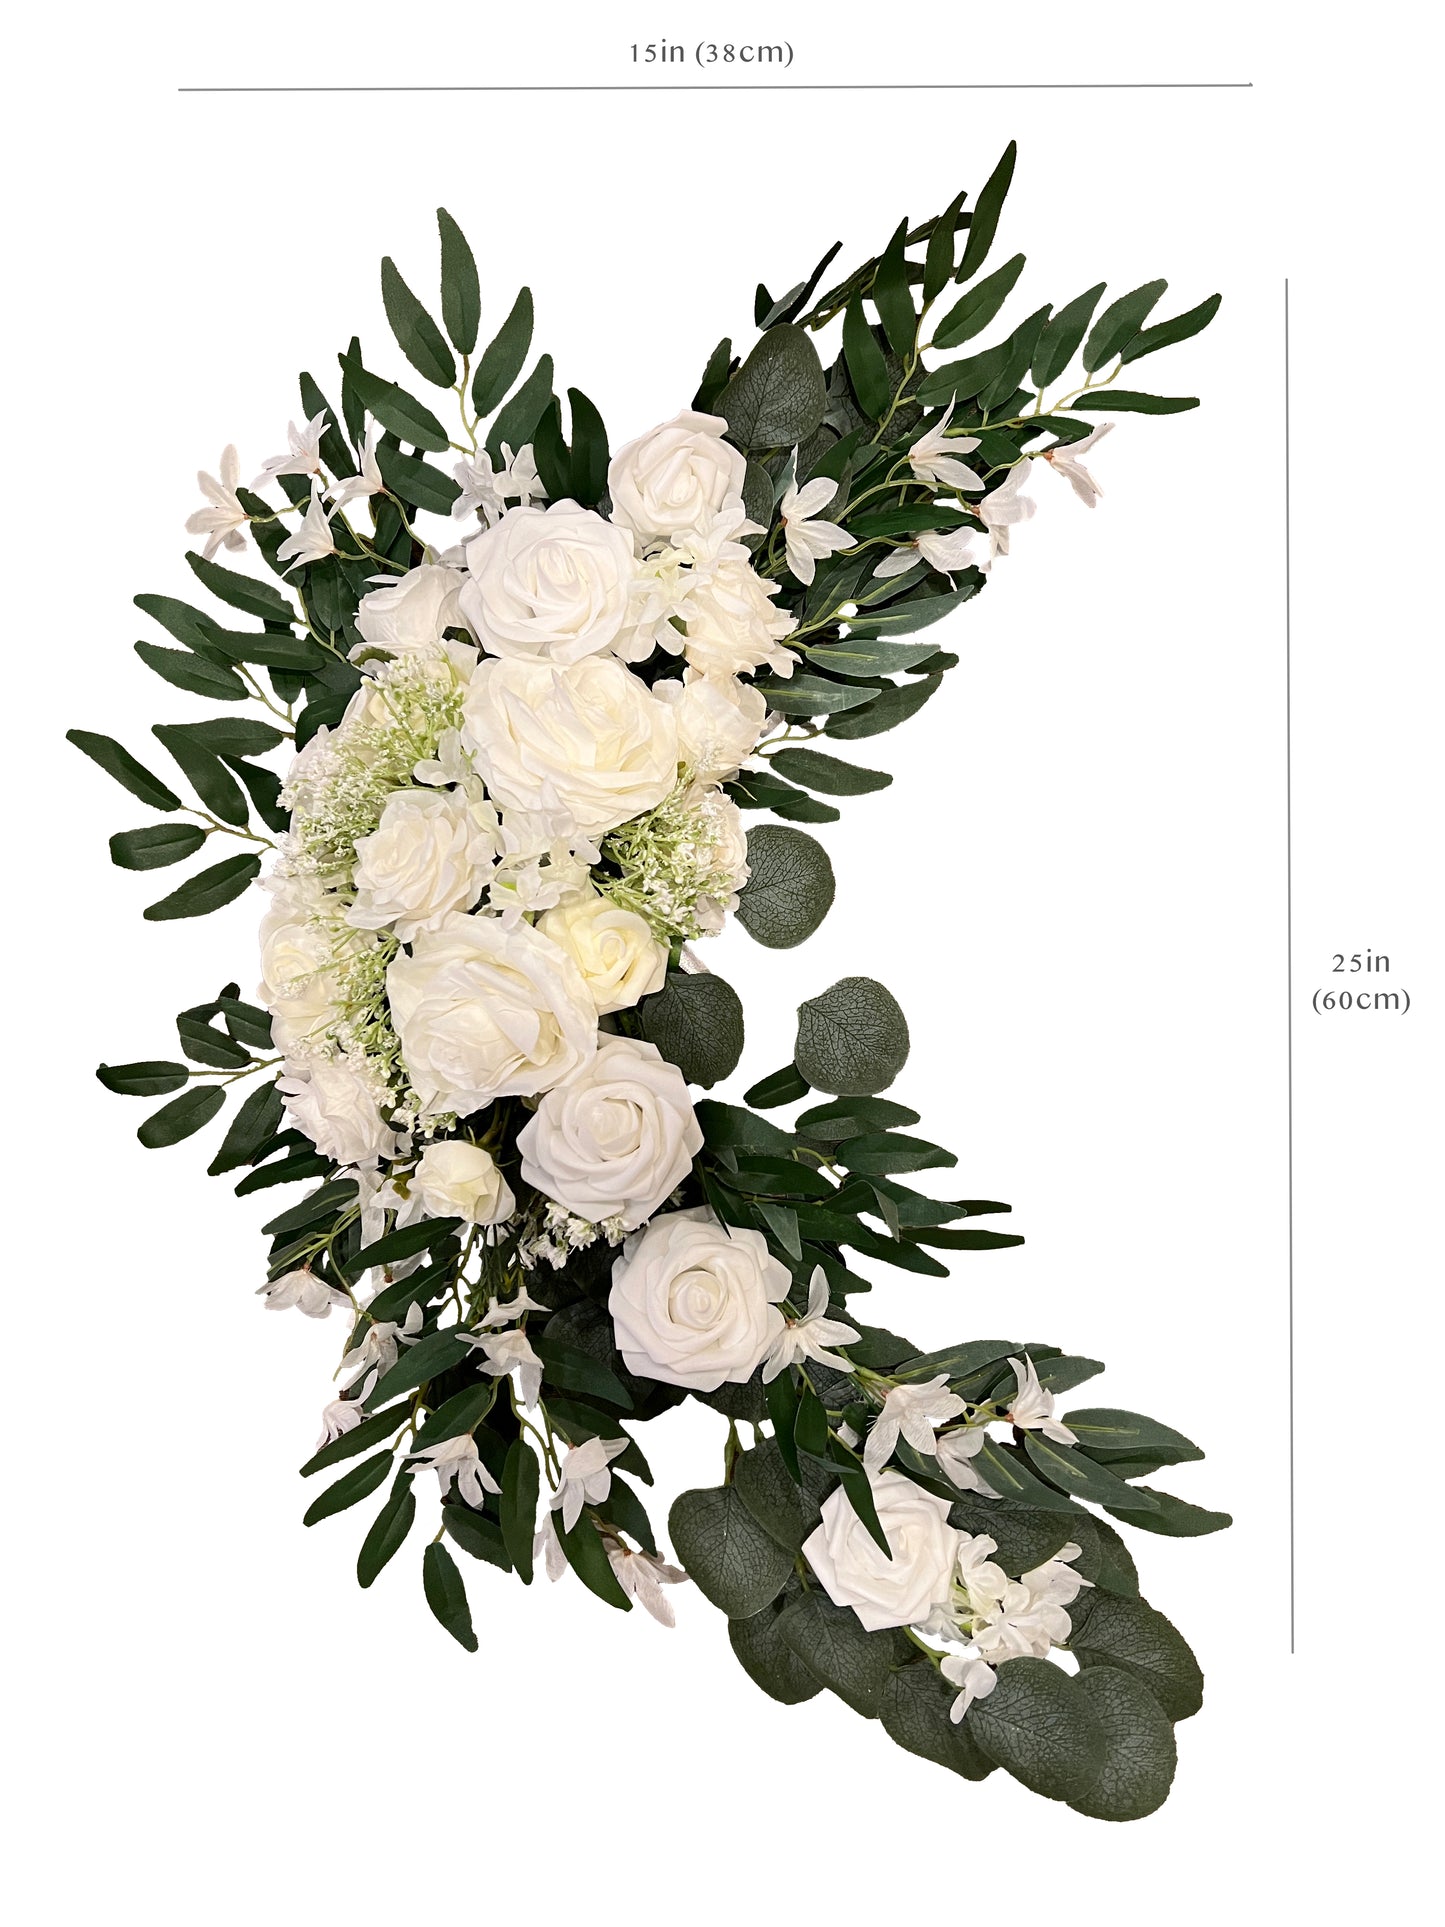 Artificial White Rose and Eucalyptus Wedding Arch Backdrop Decor - Set of 2